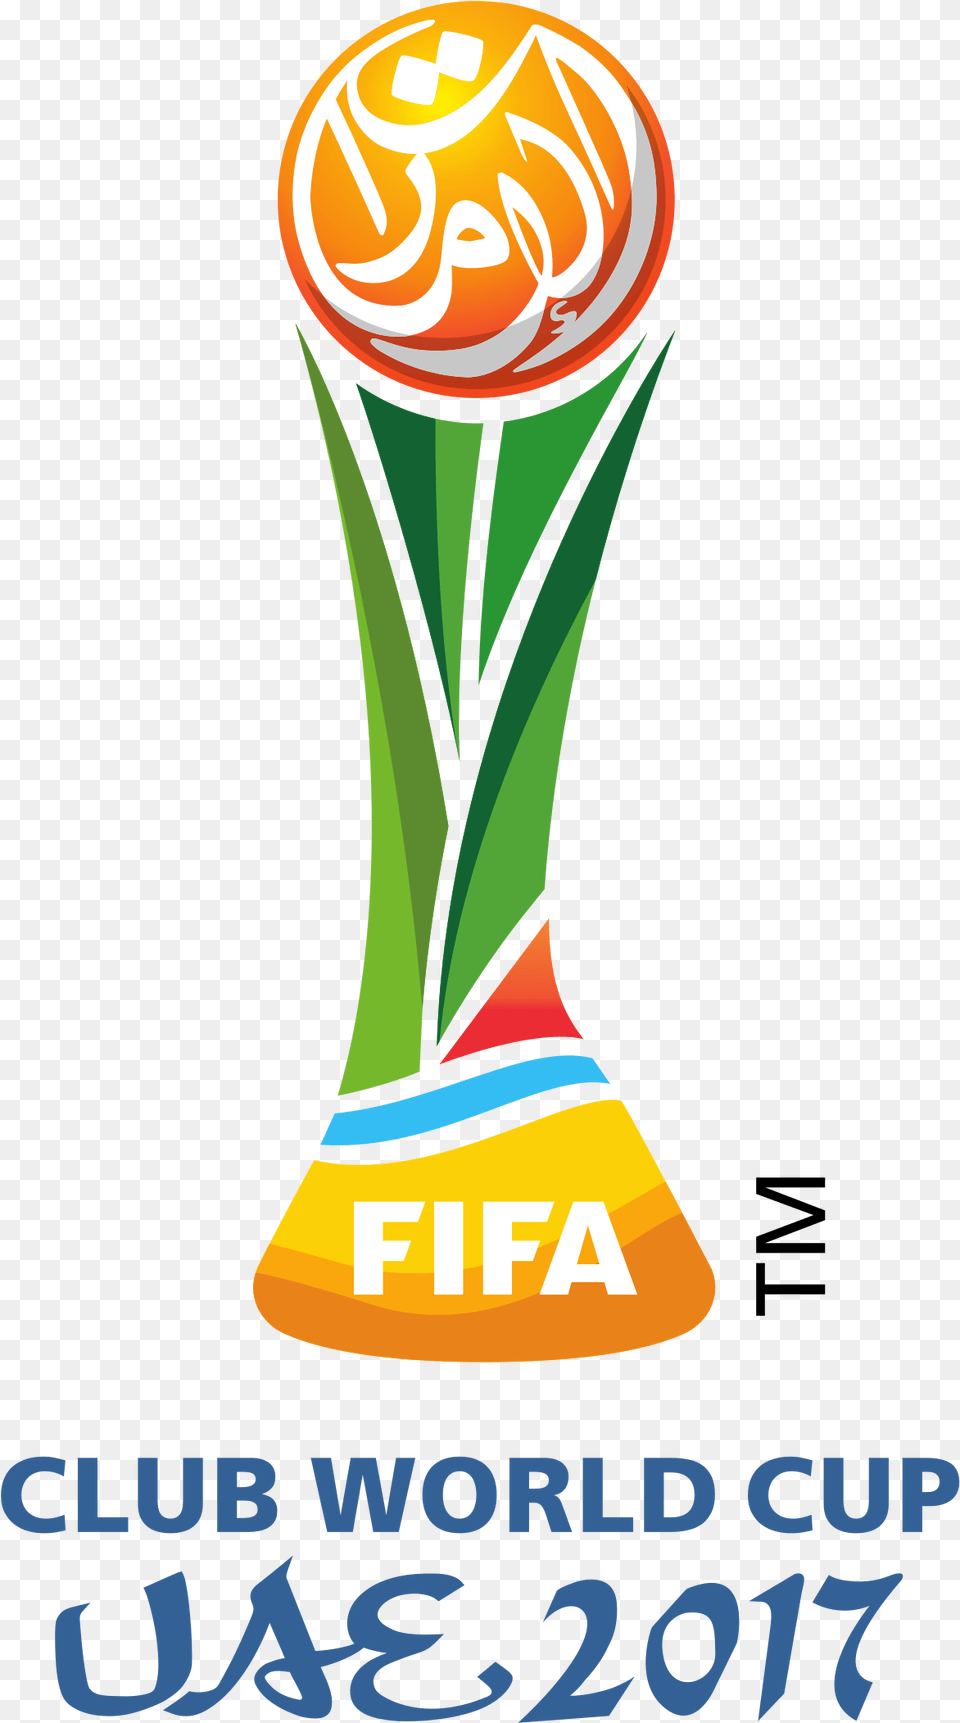 Fifa Club World Cup Logo Fifa Club World Cup 2018 Logo, Light, Trophy Png Image